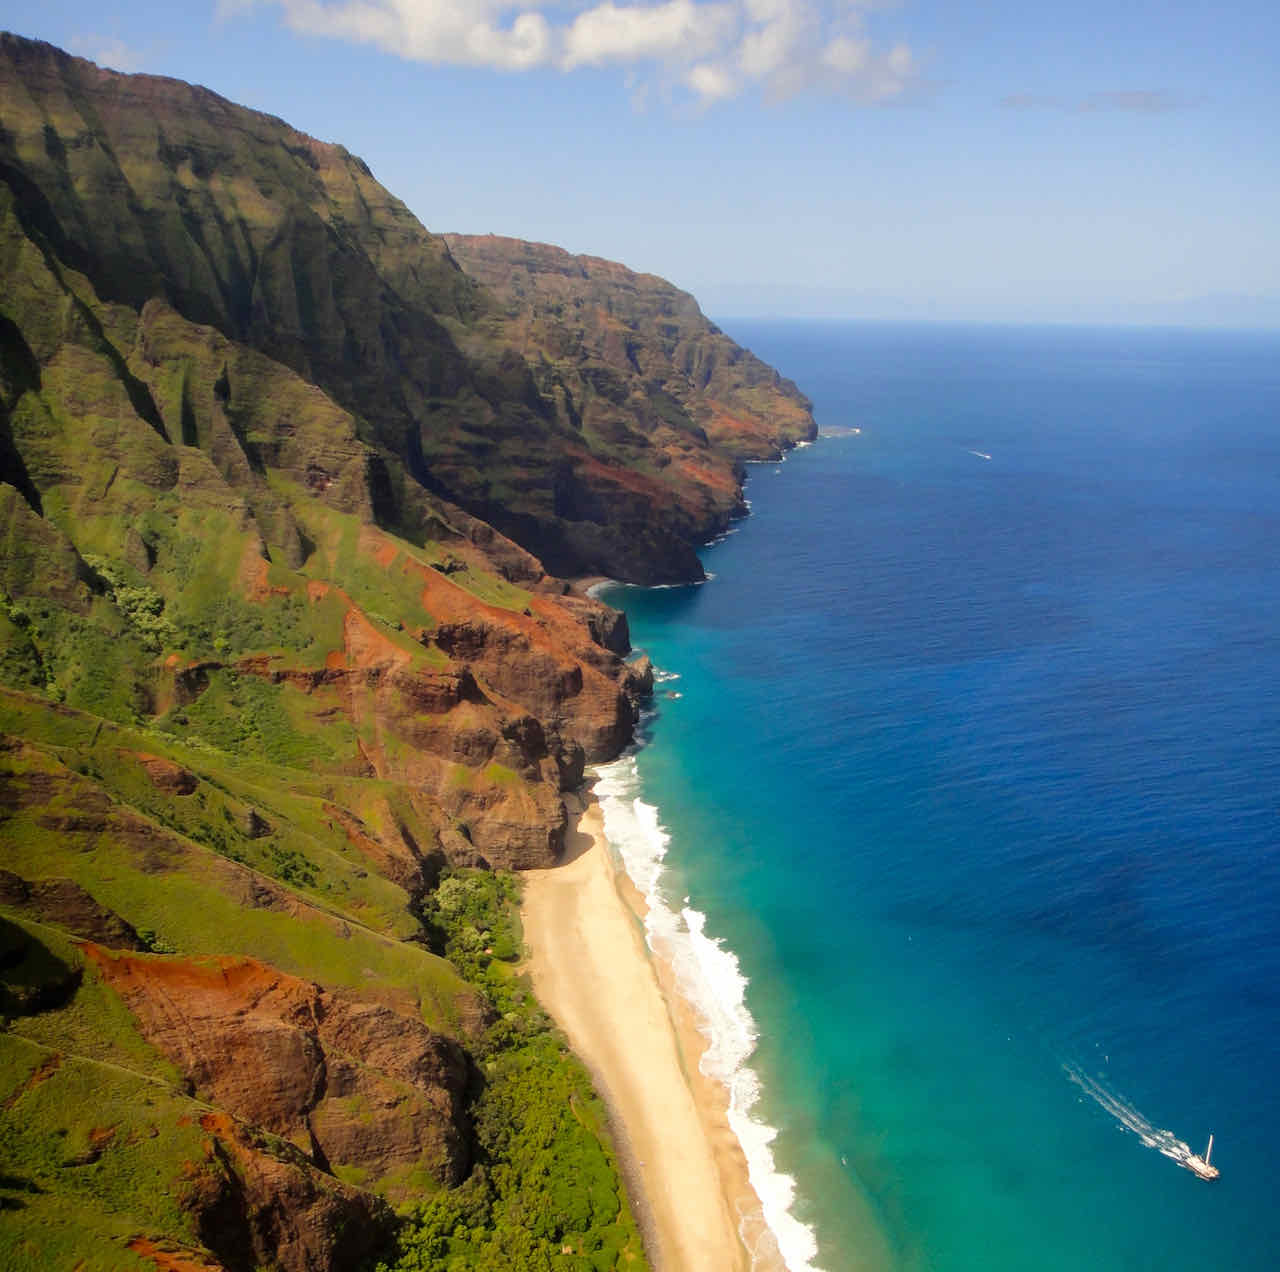 Na Pali Kauai by helicopter